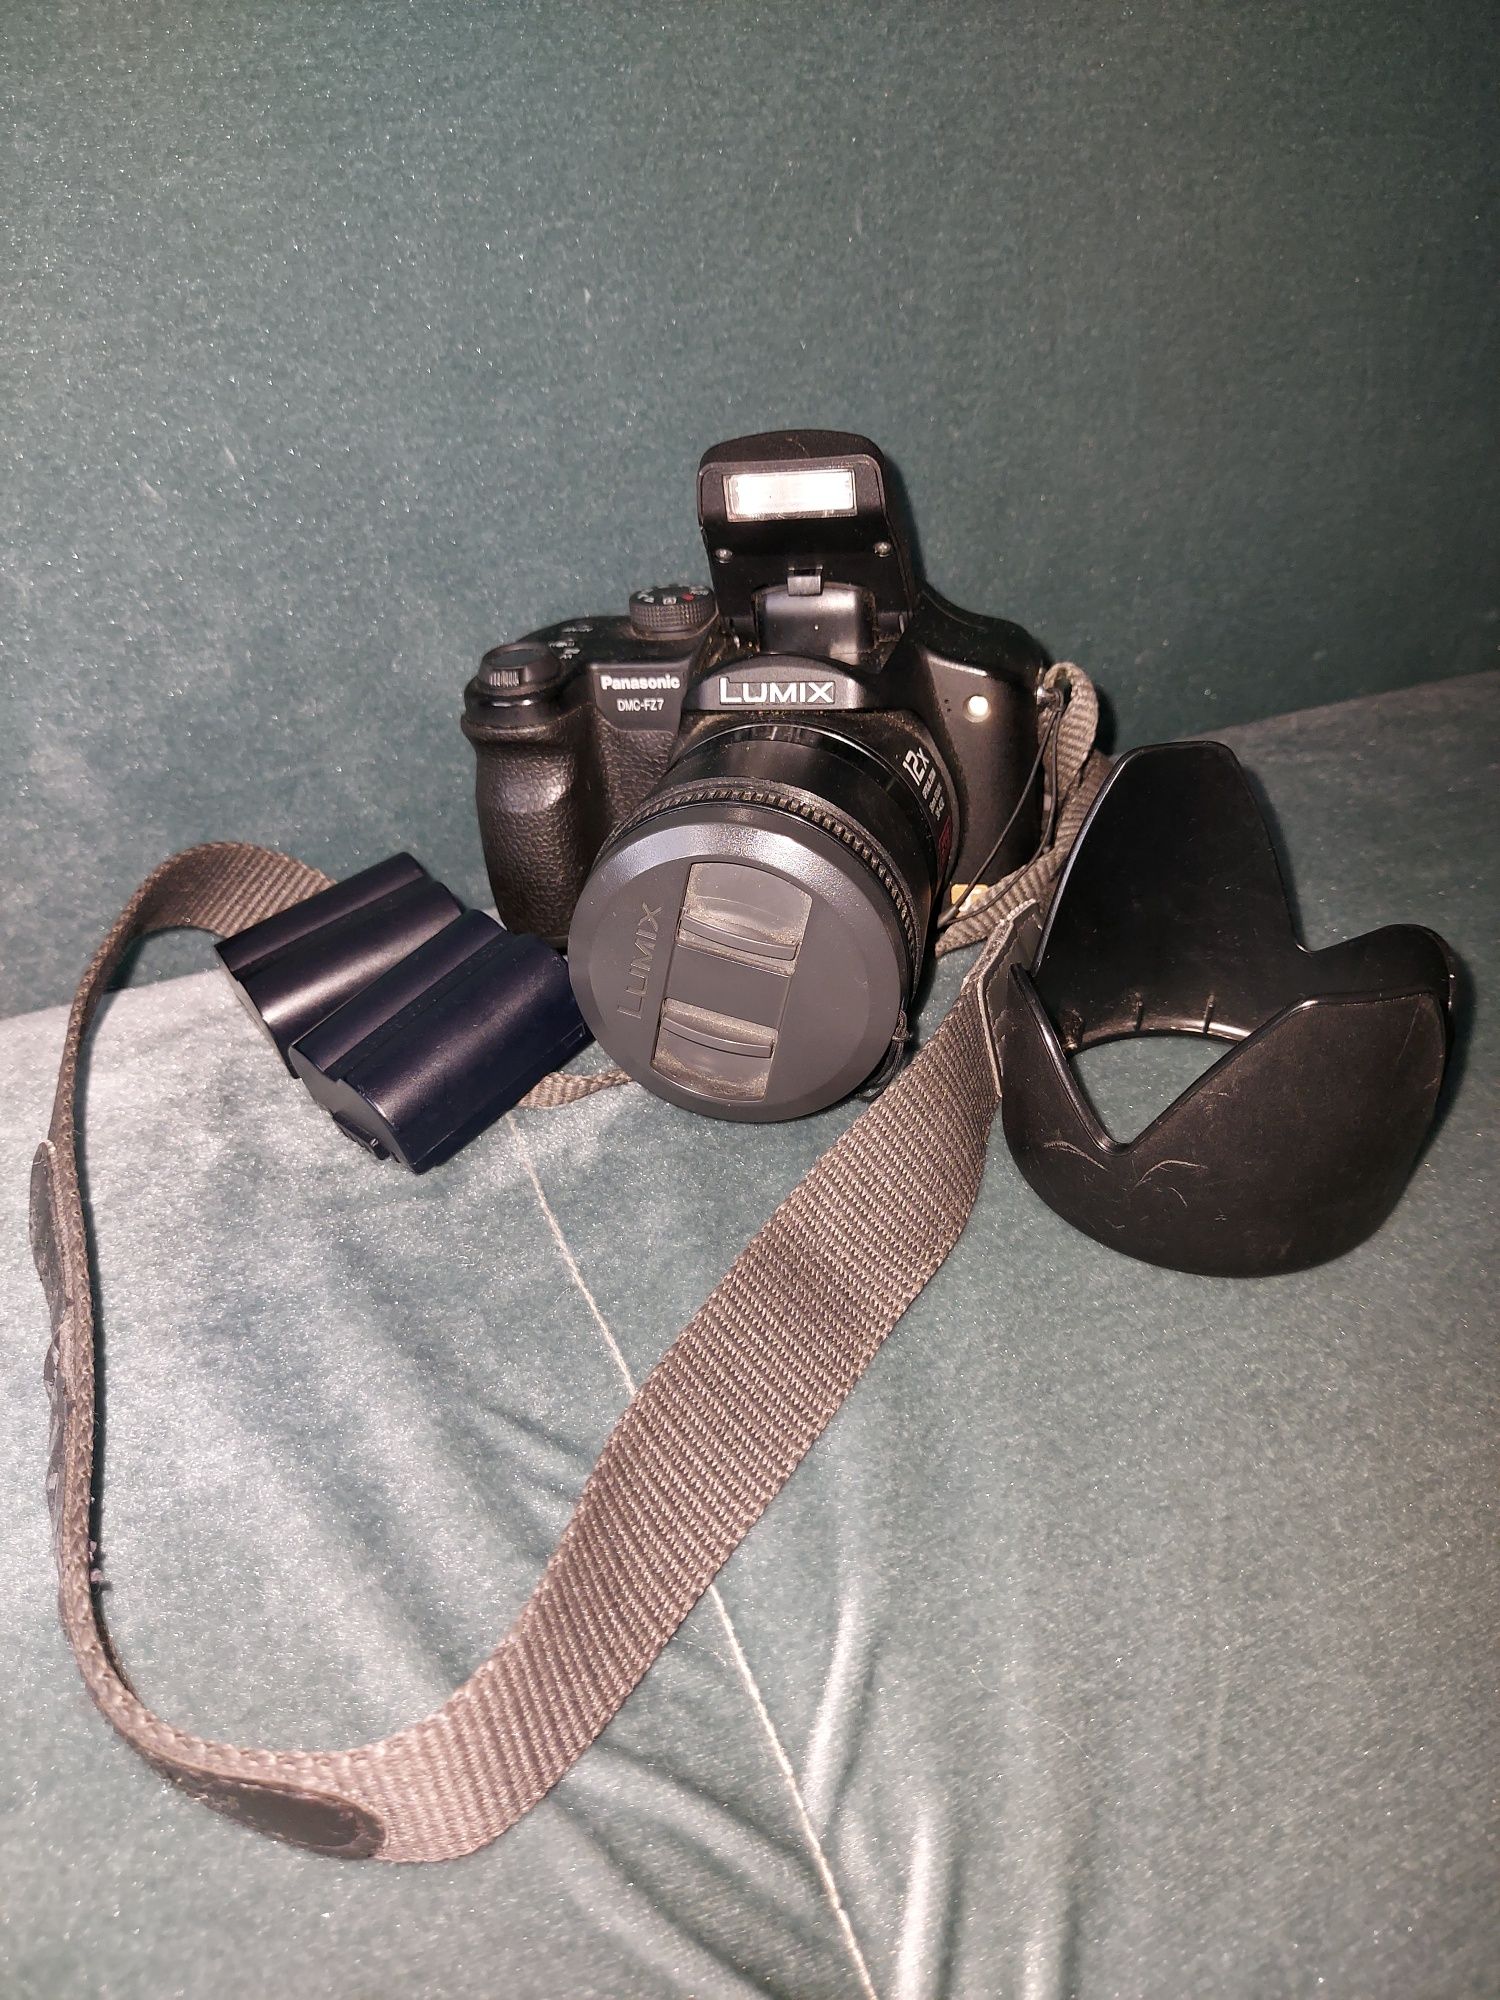 Panasonic камера DMC-F27